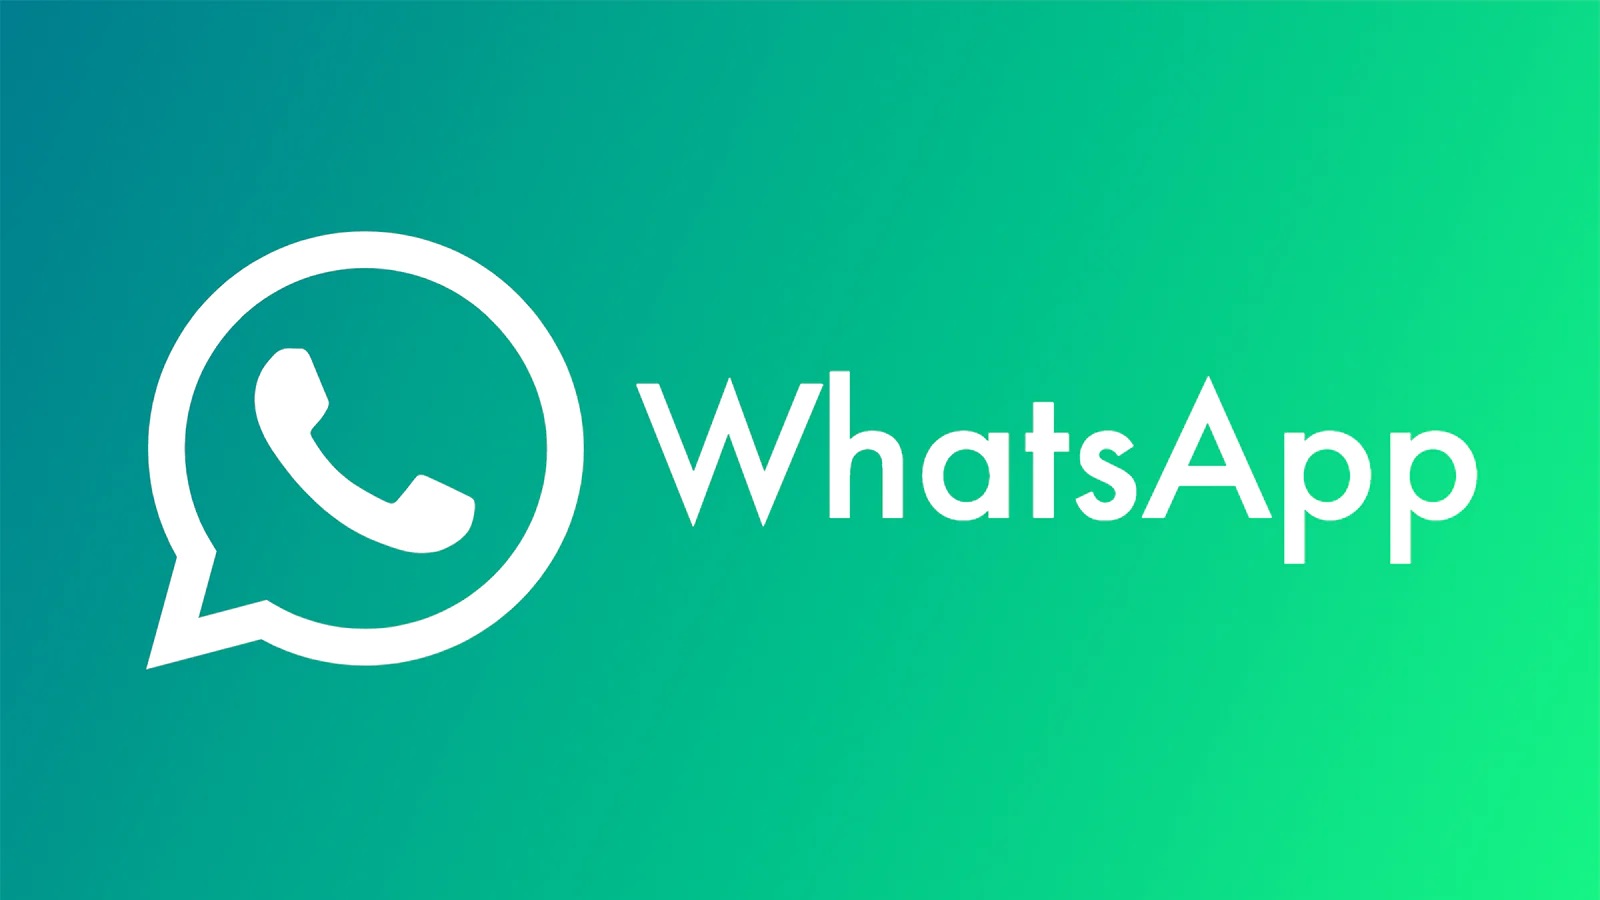 WhatsApp styrker brukernes personvern ved å blokkere muligheten til å ta skjermbilder av profilbilder.